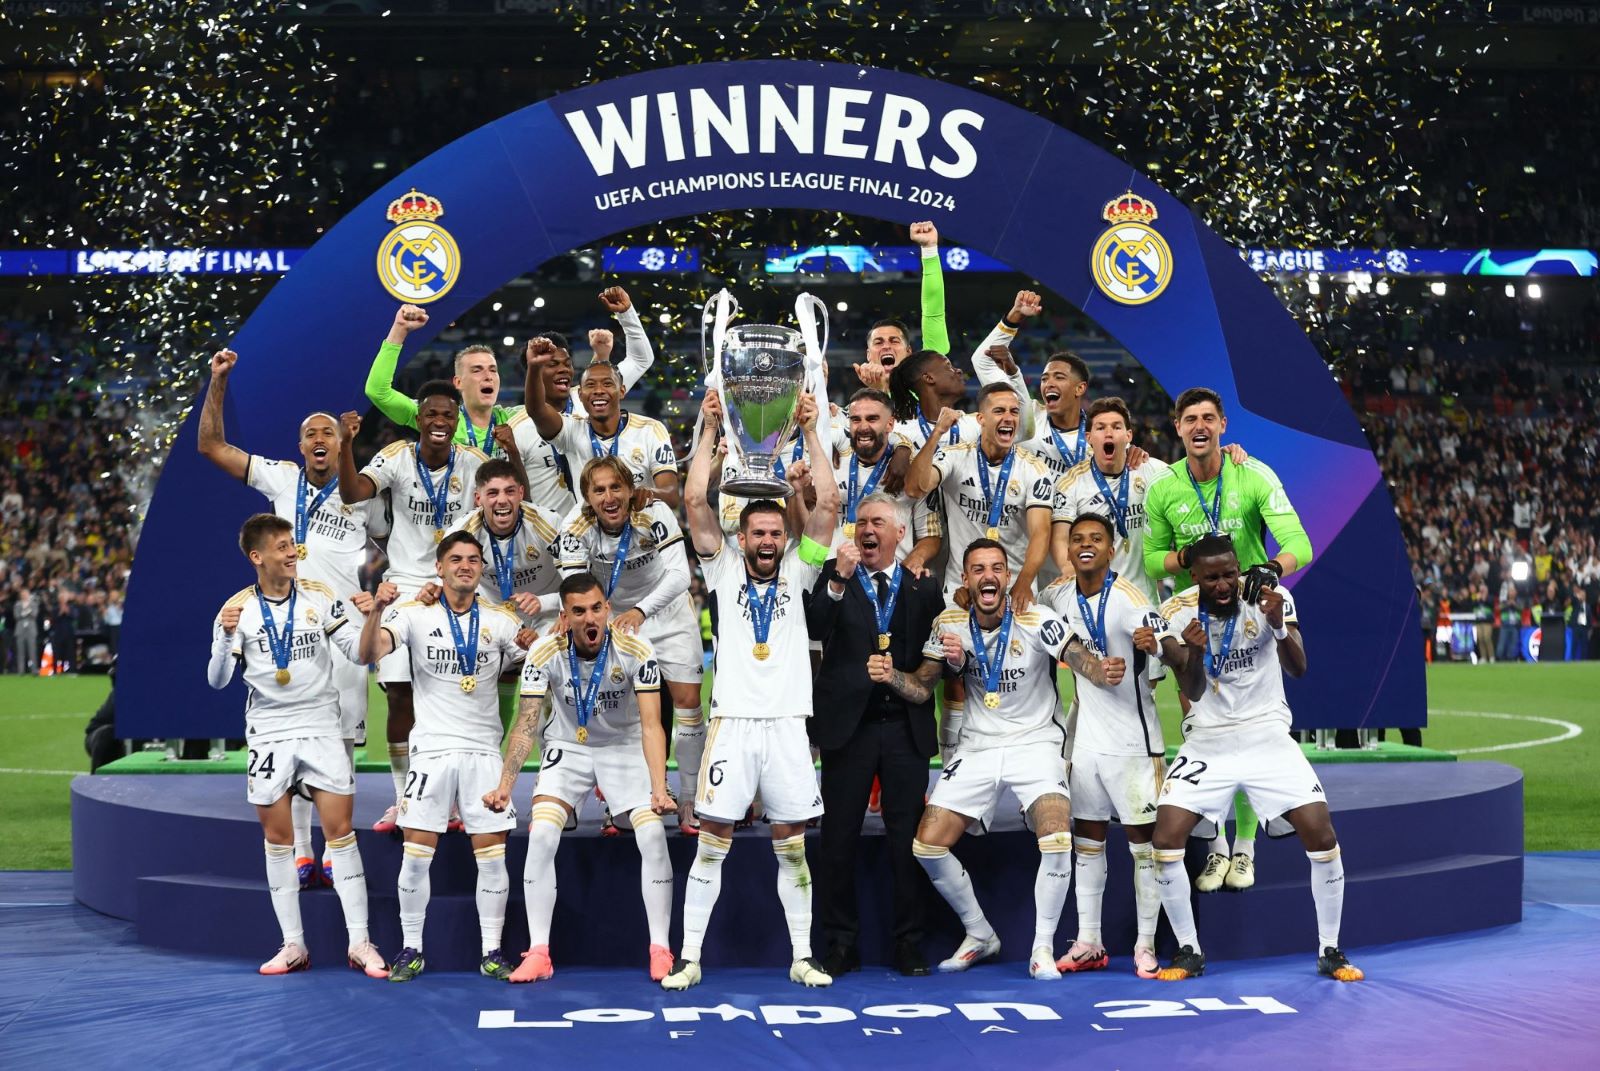 MEGA: Διατήρησε τα τηλεοπτικά δικαιώματα του Champions League για την επόμενη τριετία